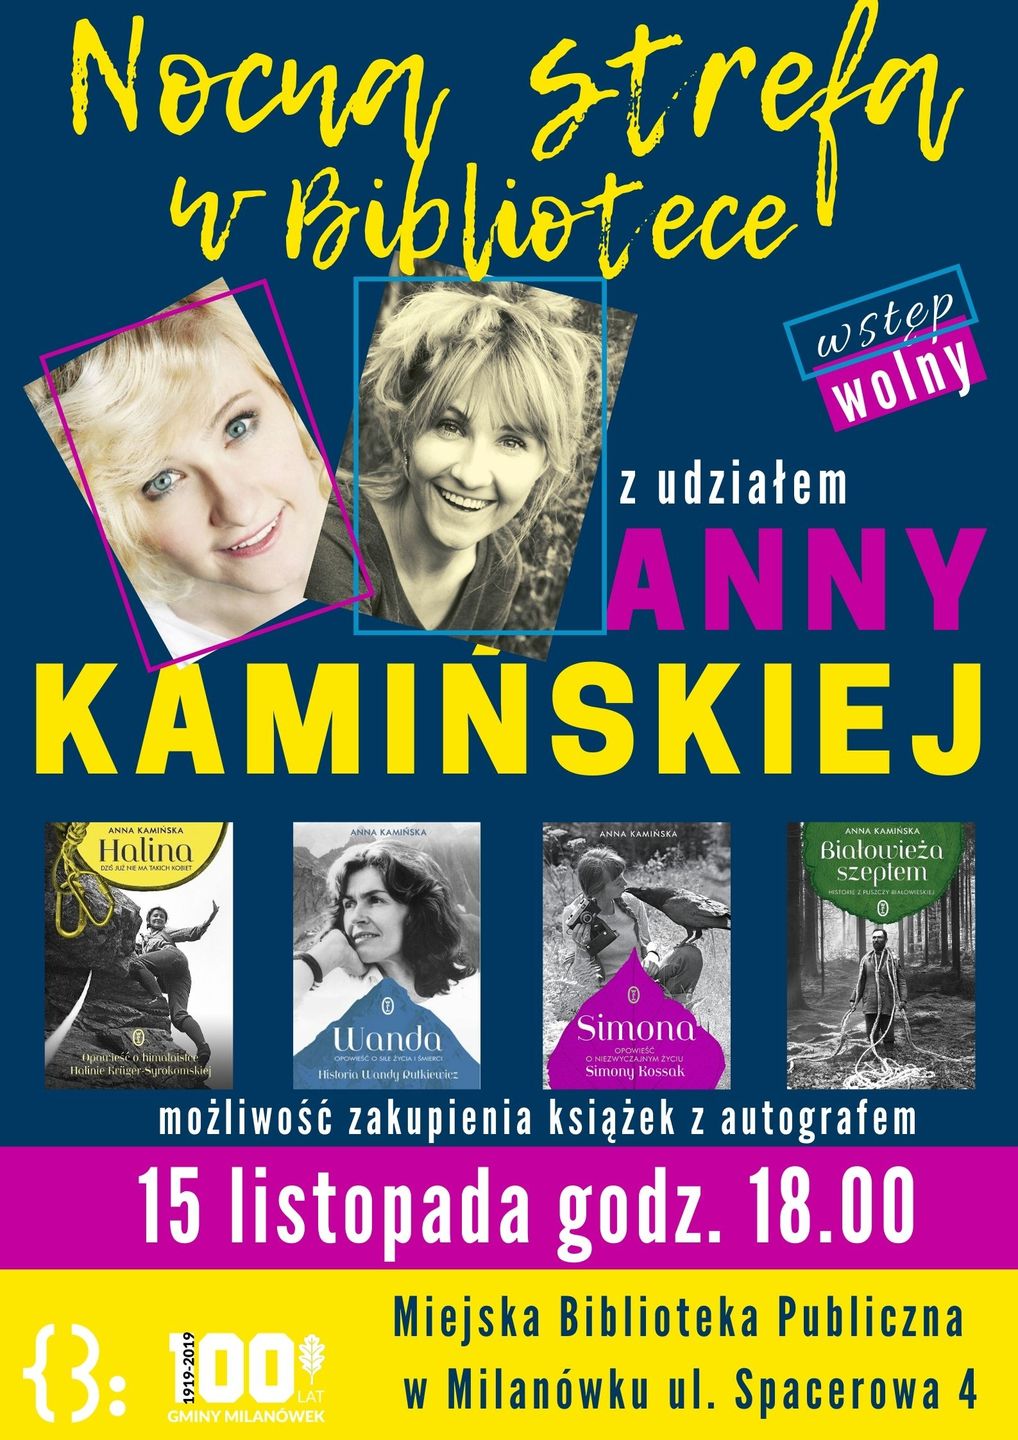 Plakat promujący spotkanie autorskie z Anną Kamińską